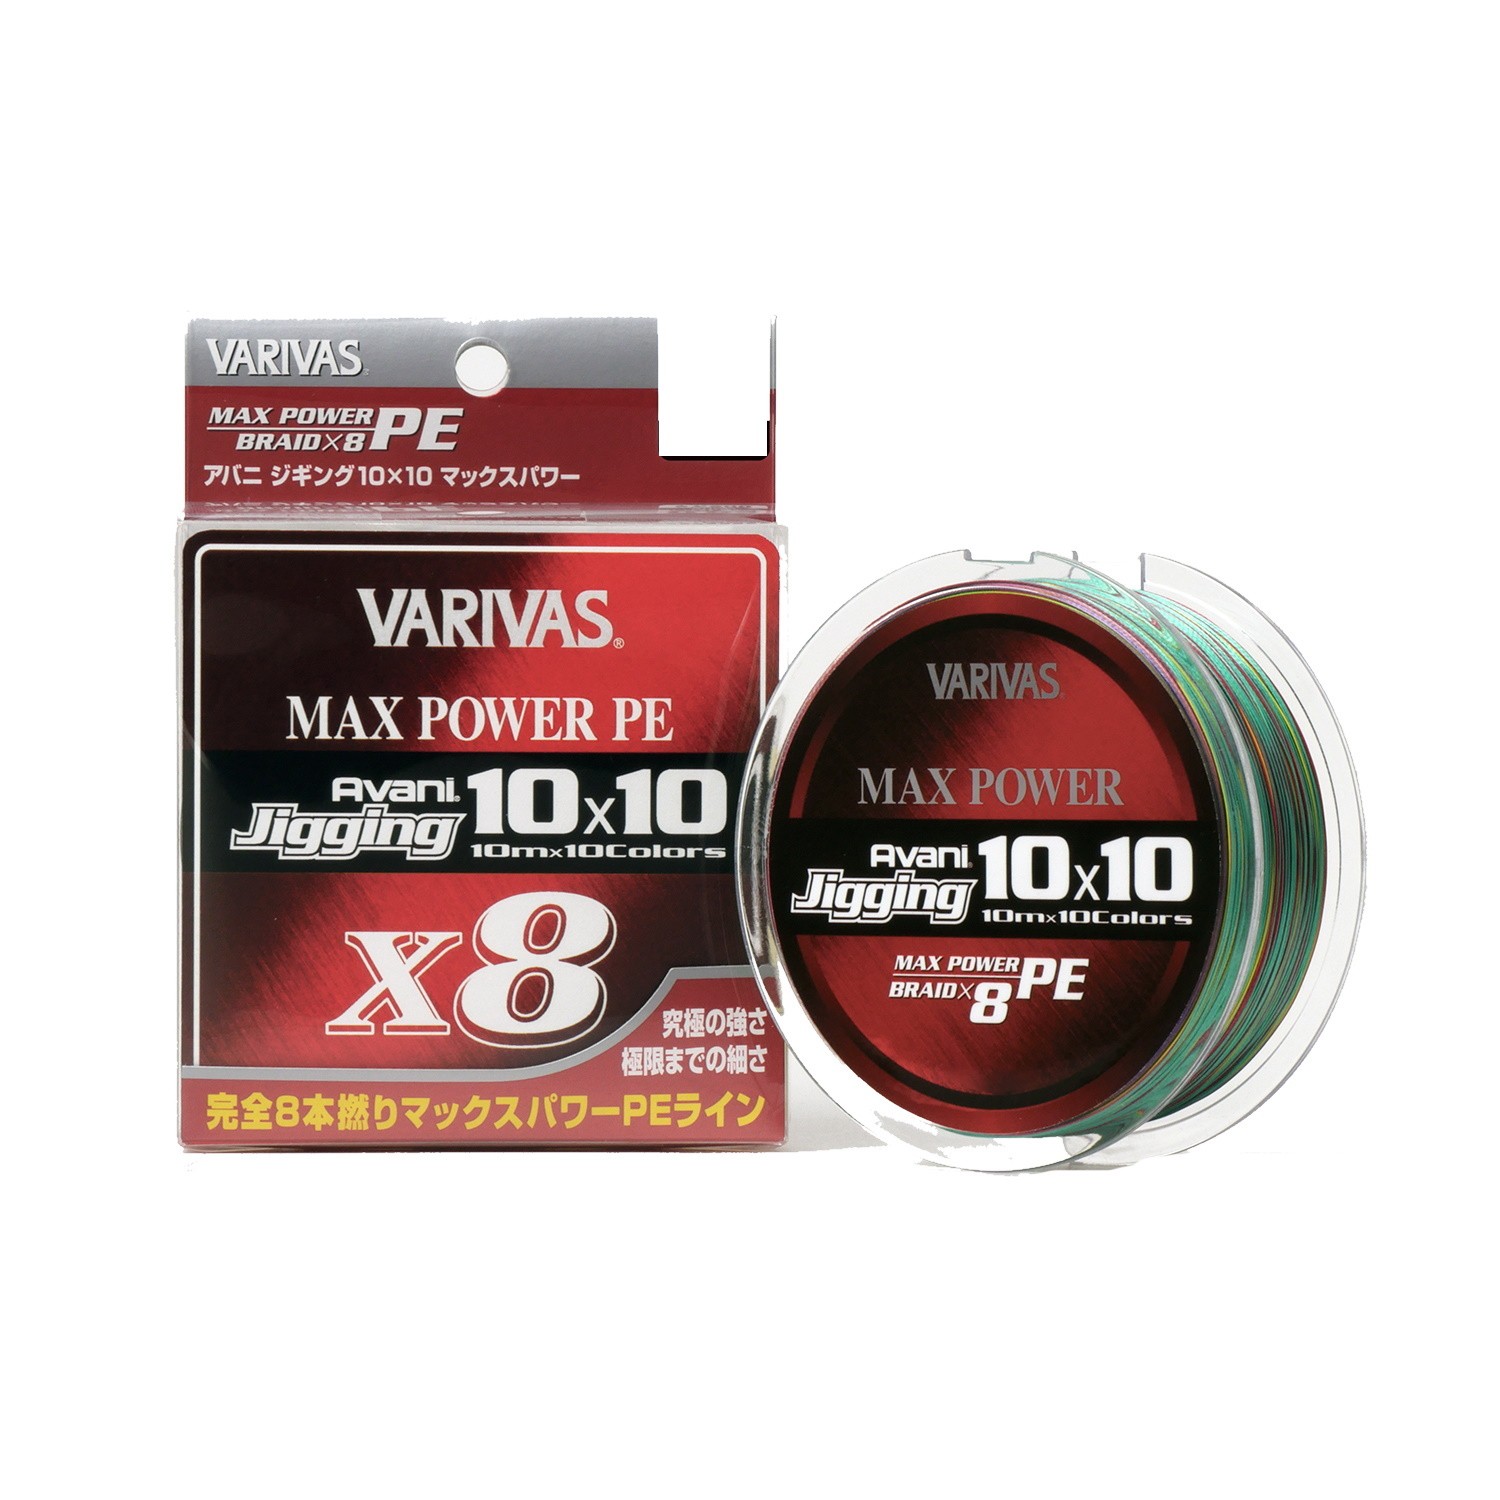 Шнур Varivas Avani Jigging 10x10 Max Power PE X8 200м PE 0.6 - фото 1